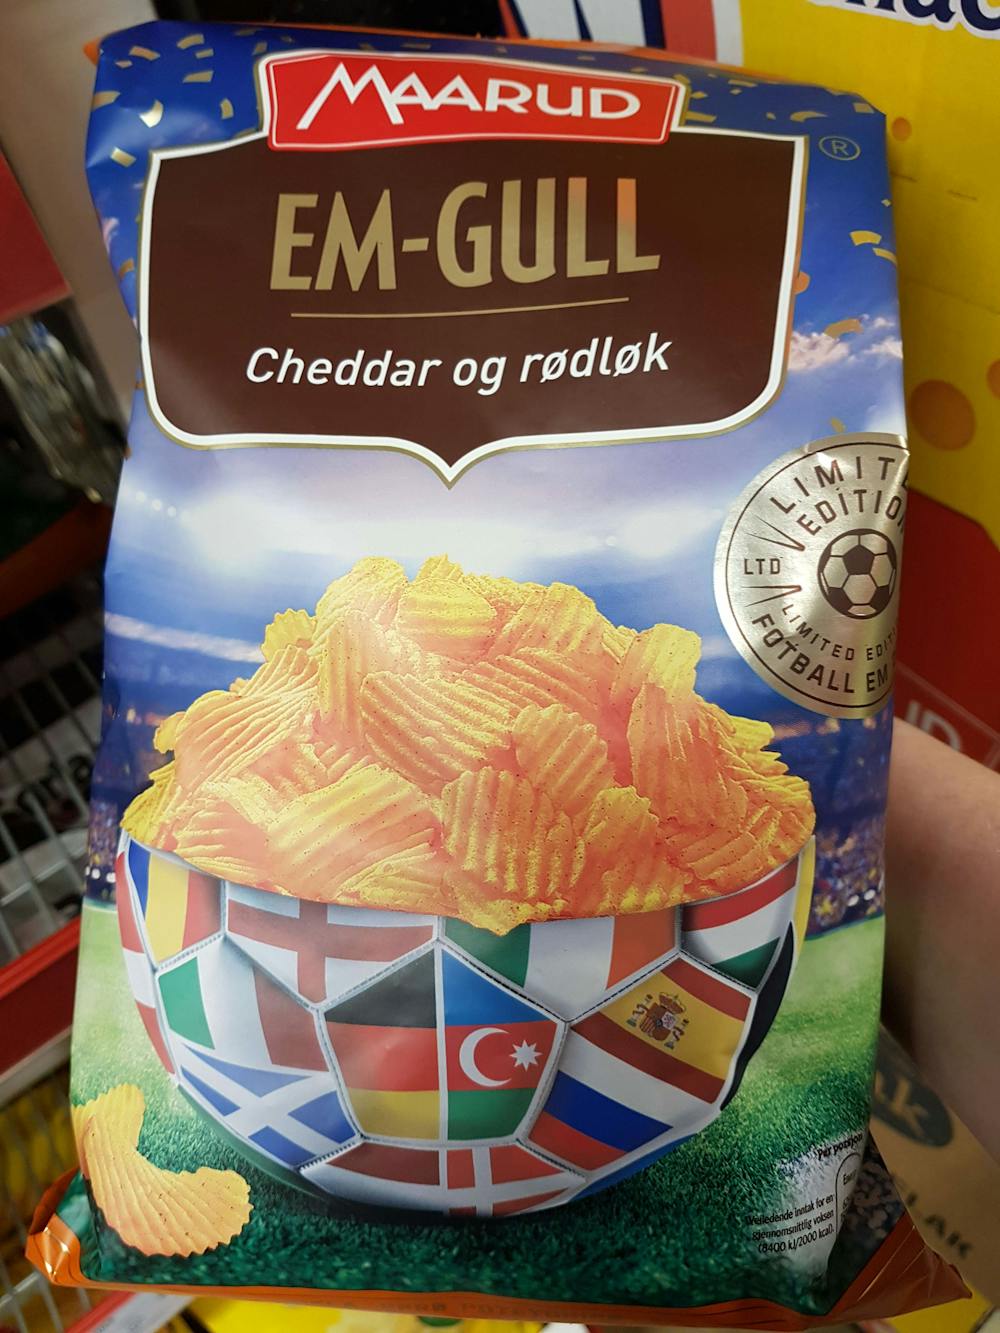 EM-gull Cheddar og rødløk, Maarud 